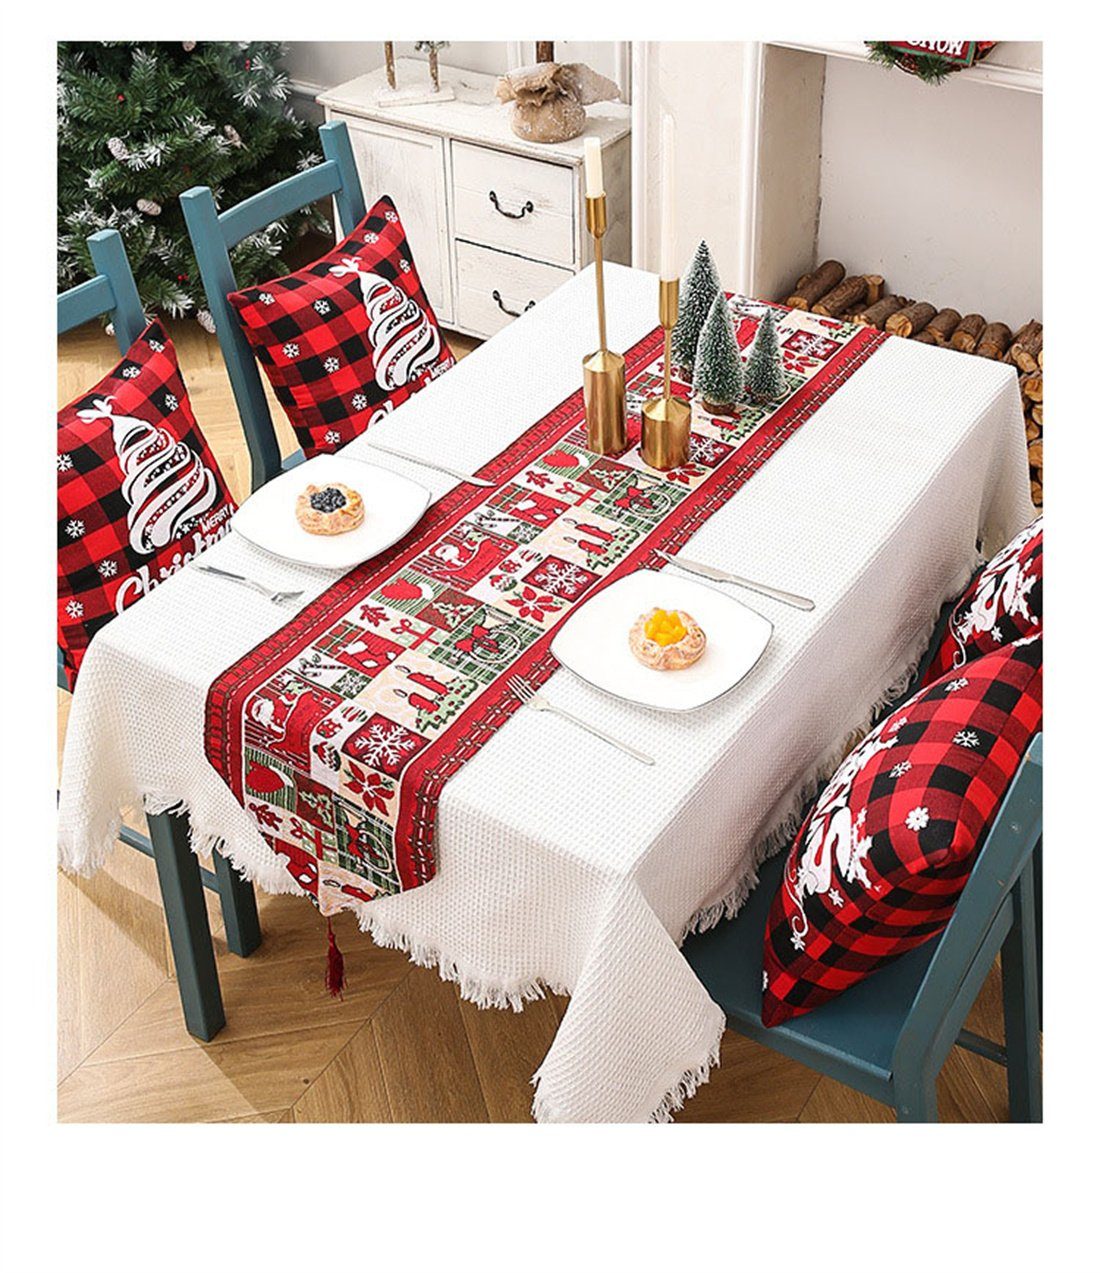 Tischdekoration Weihnachten bedruckte DÖRÖY Festliche Kreativ Tischfahnen, Tischläufer